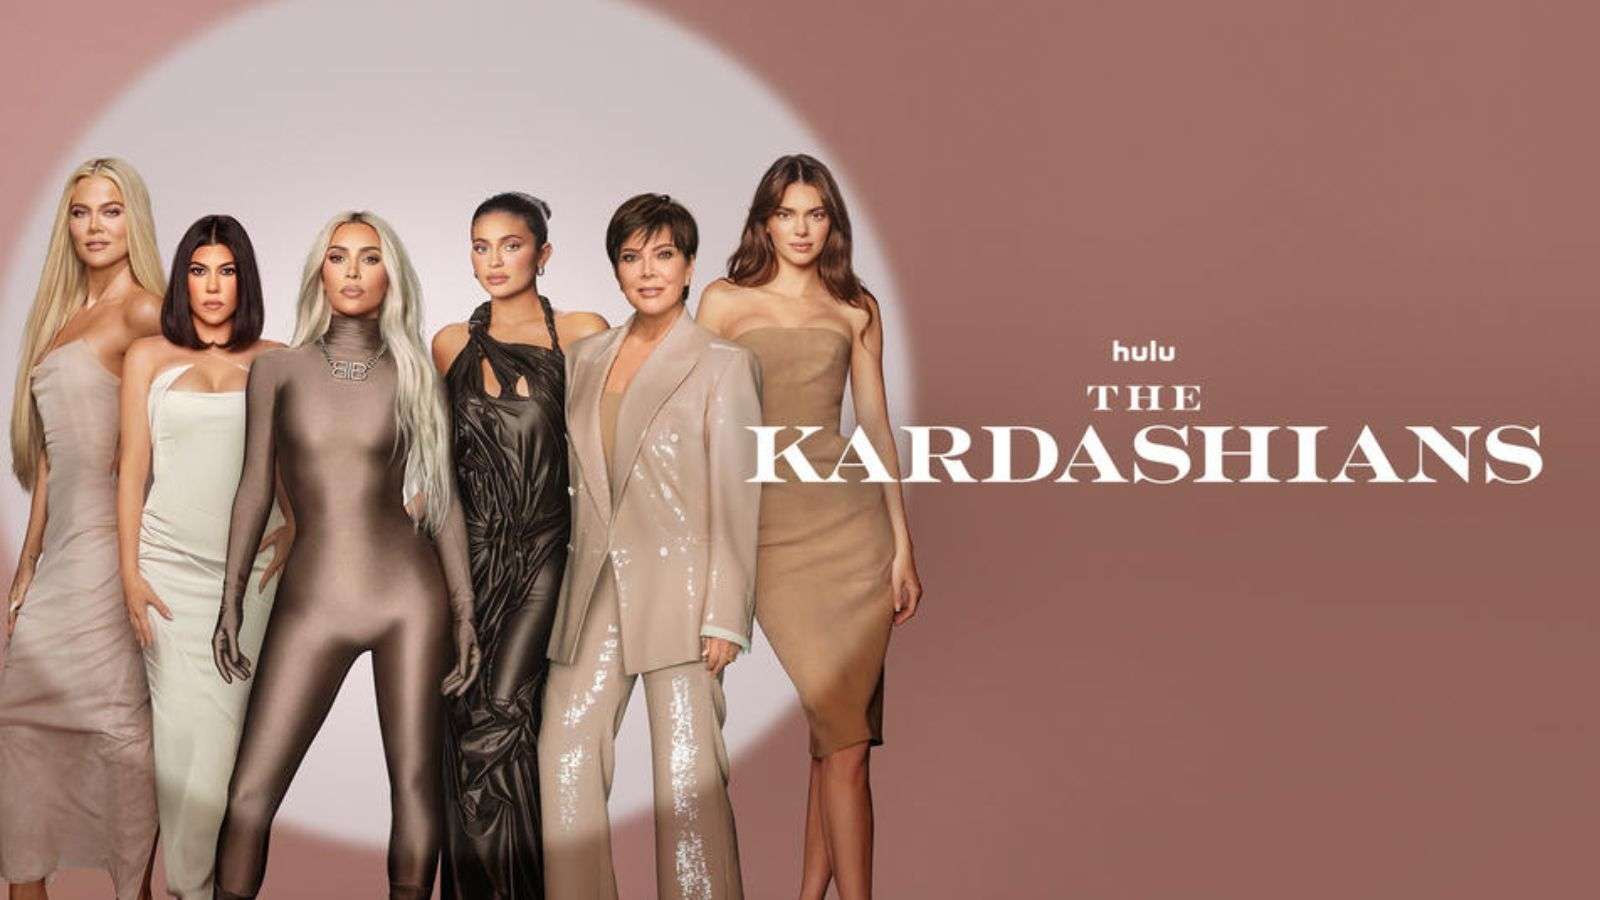 The Kardashians Hulu